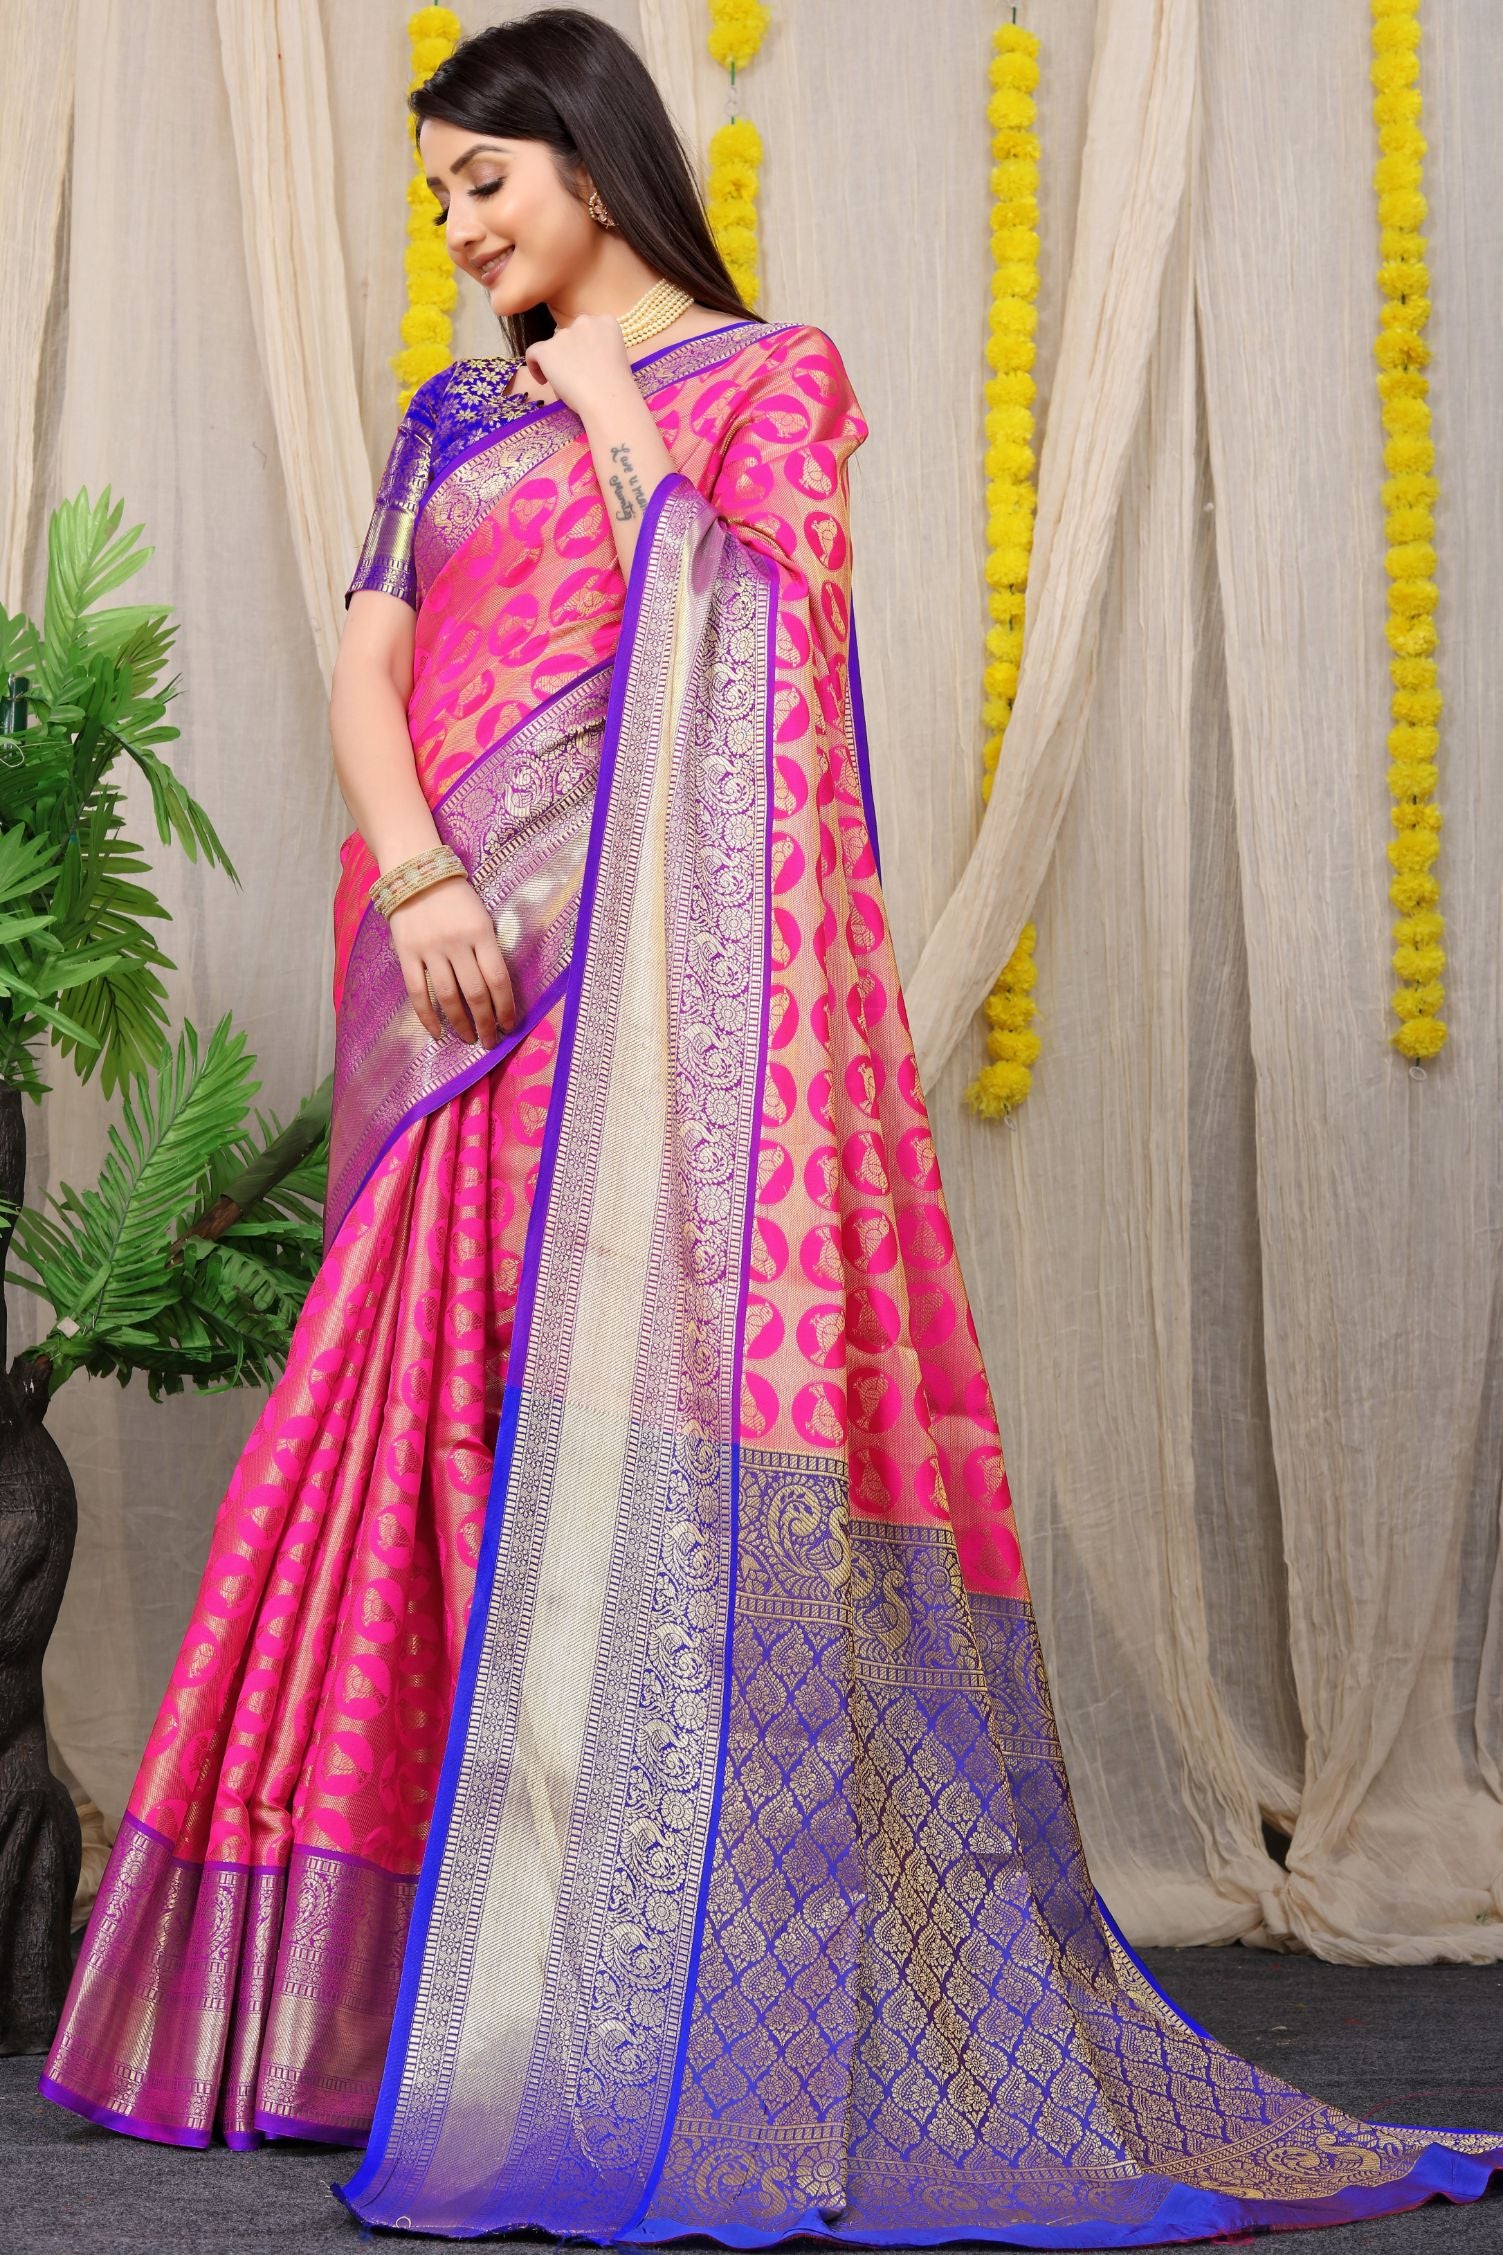 pink color Shop for Designer South Indian Saree Online